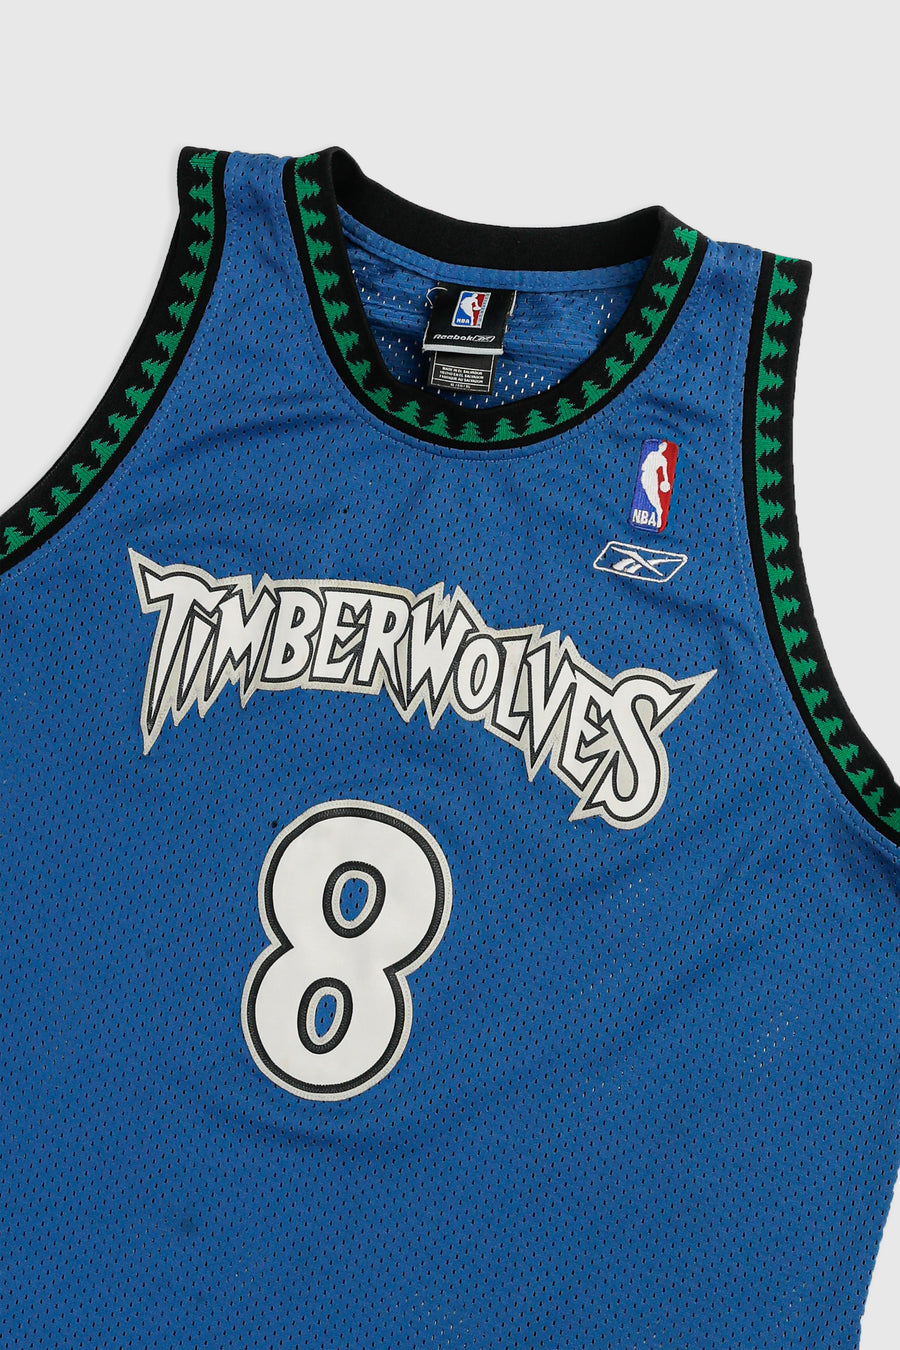 Vintage Minnesota Timberwolves NBA Jersey - XL